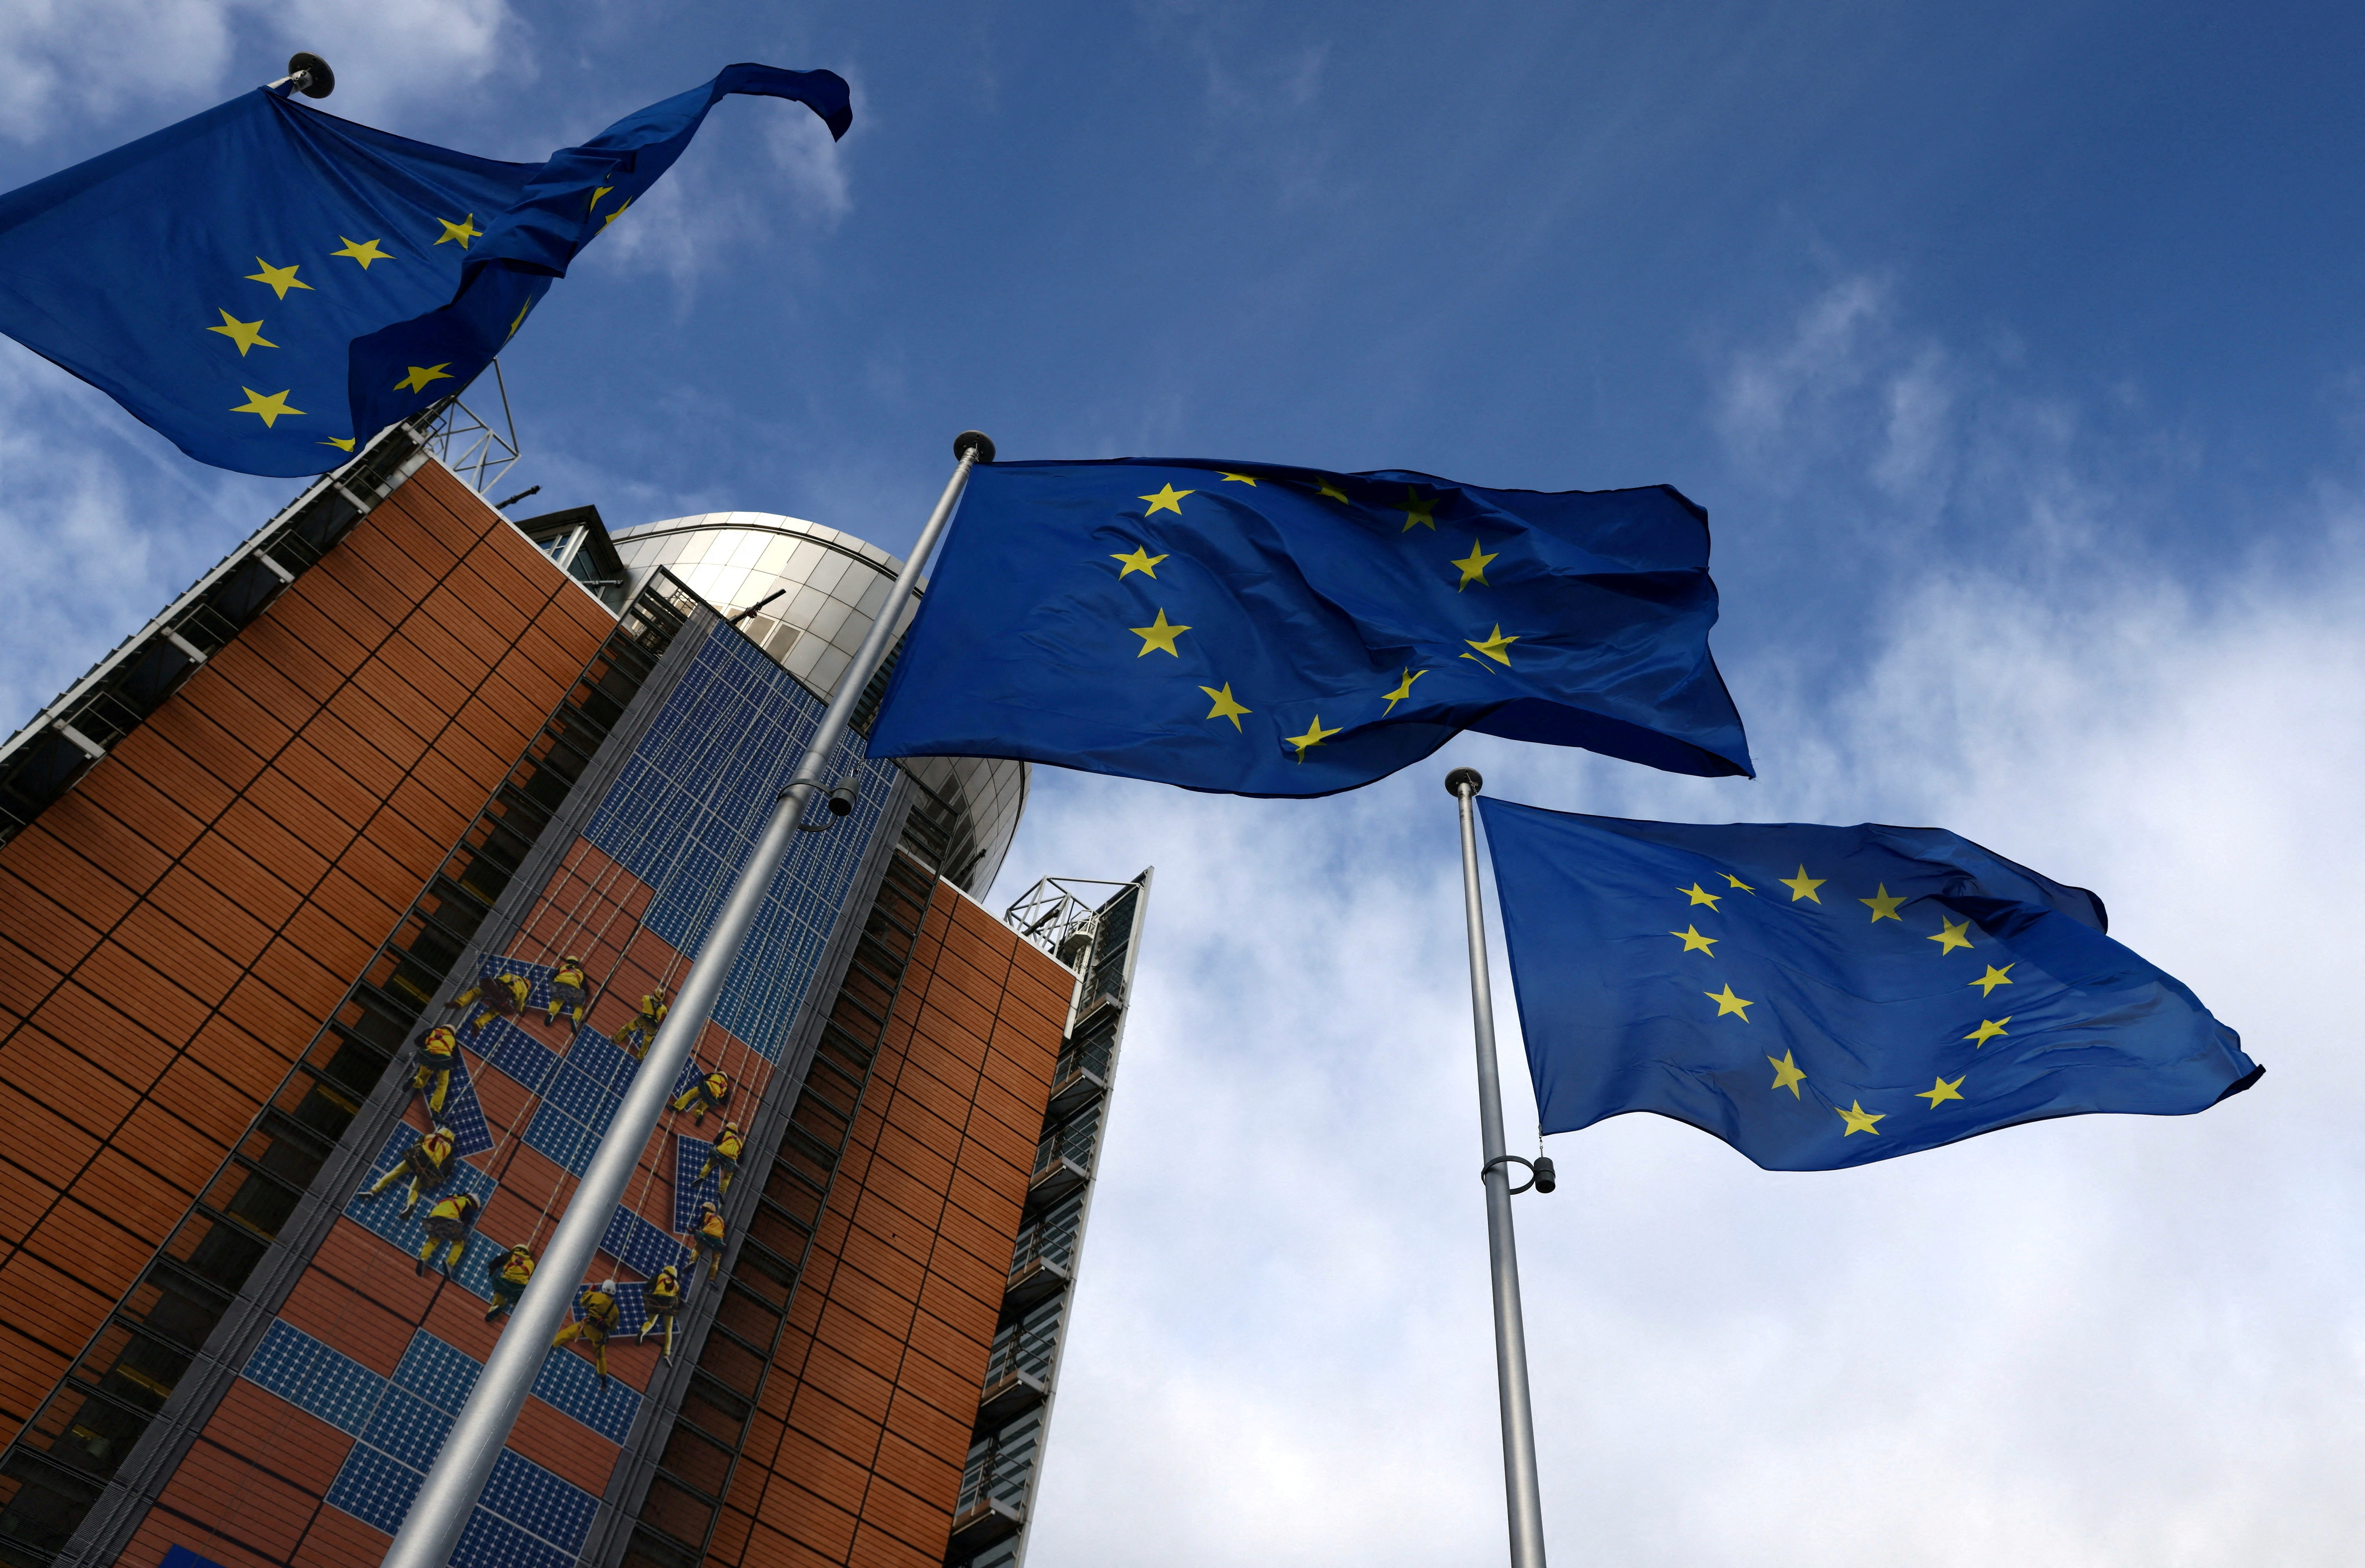 Banderas de la Unión Europea ondean frente a la sede de la Comisión de la UE, en Bruselas, Bélgica, 1 de febrero de 2023 (REUTERS/Yves Herman/archivo)